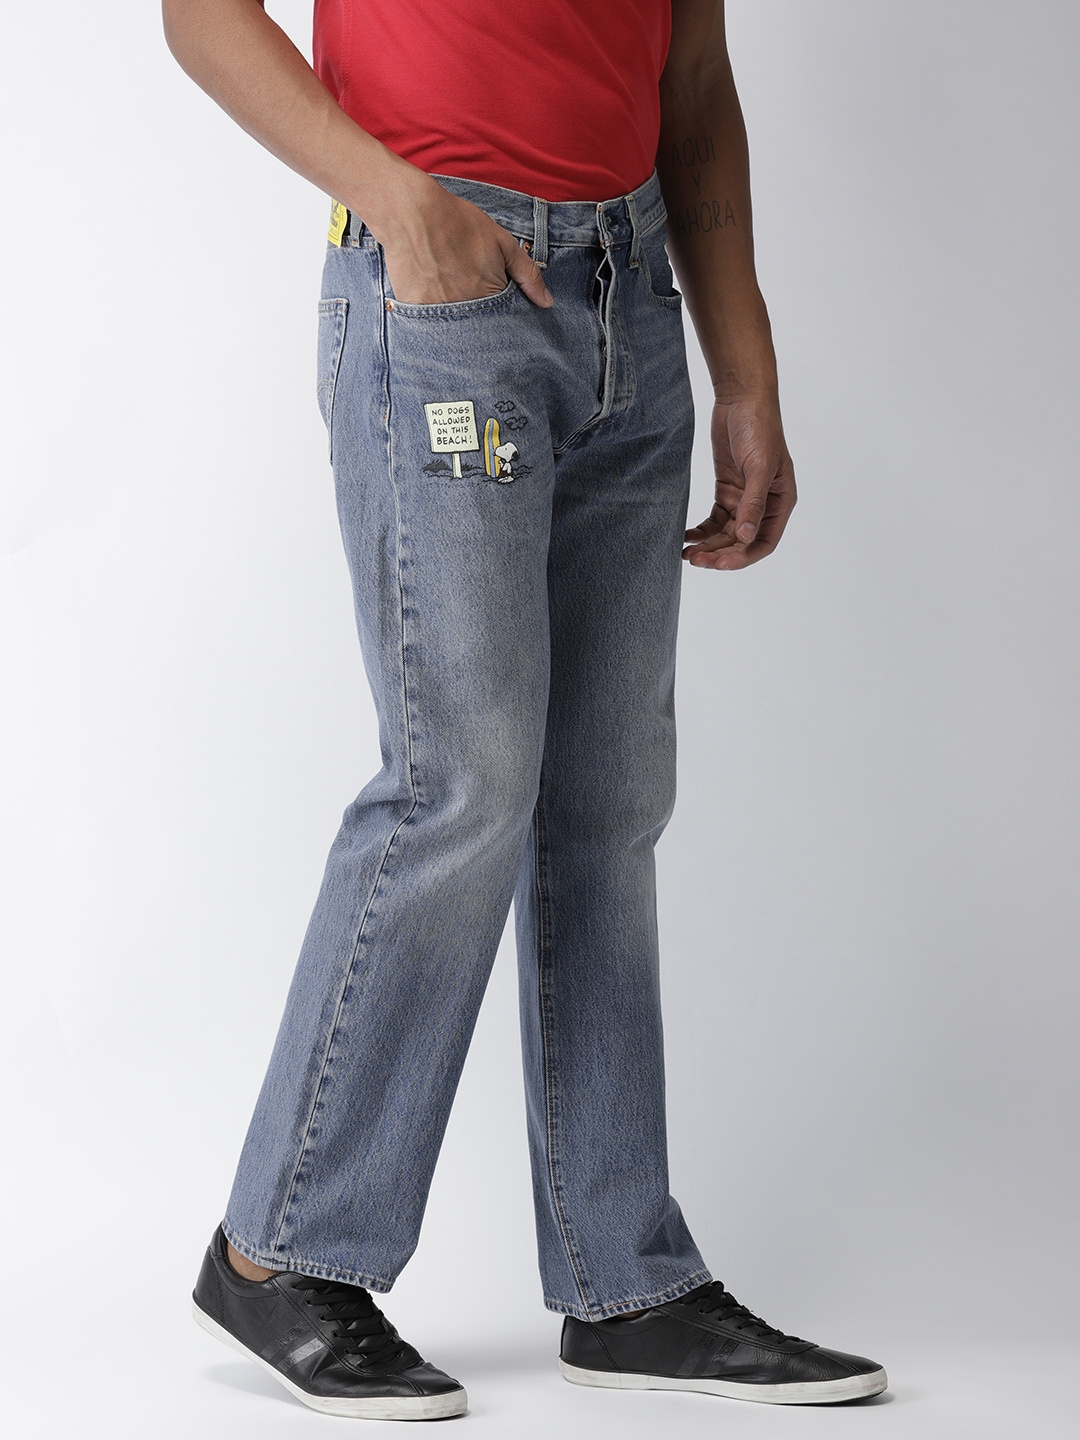 mens low rise jeans levis